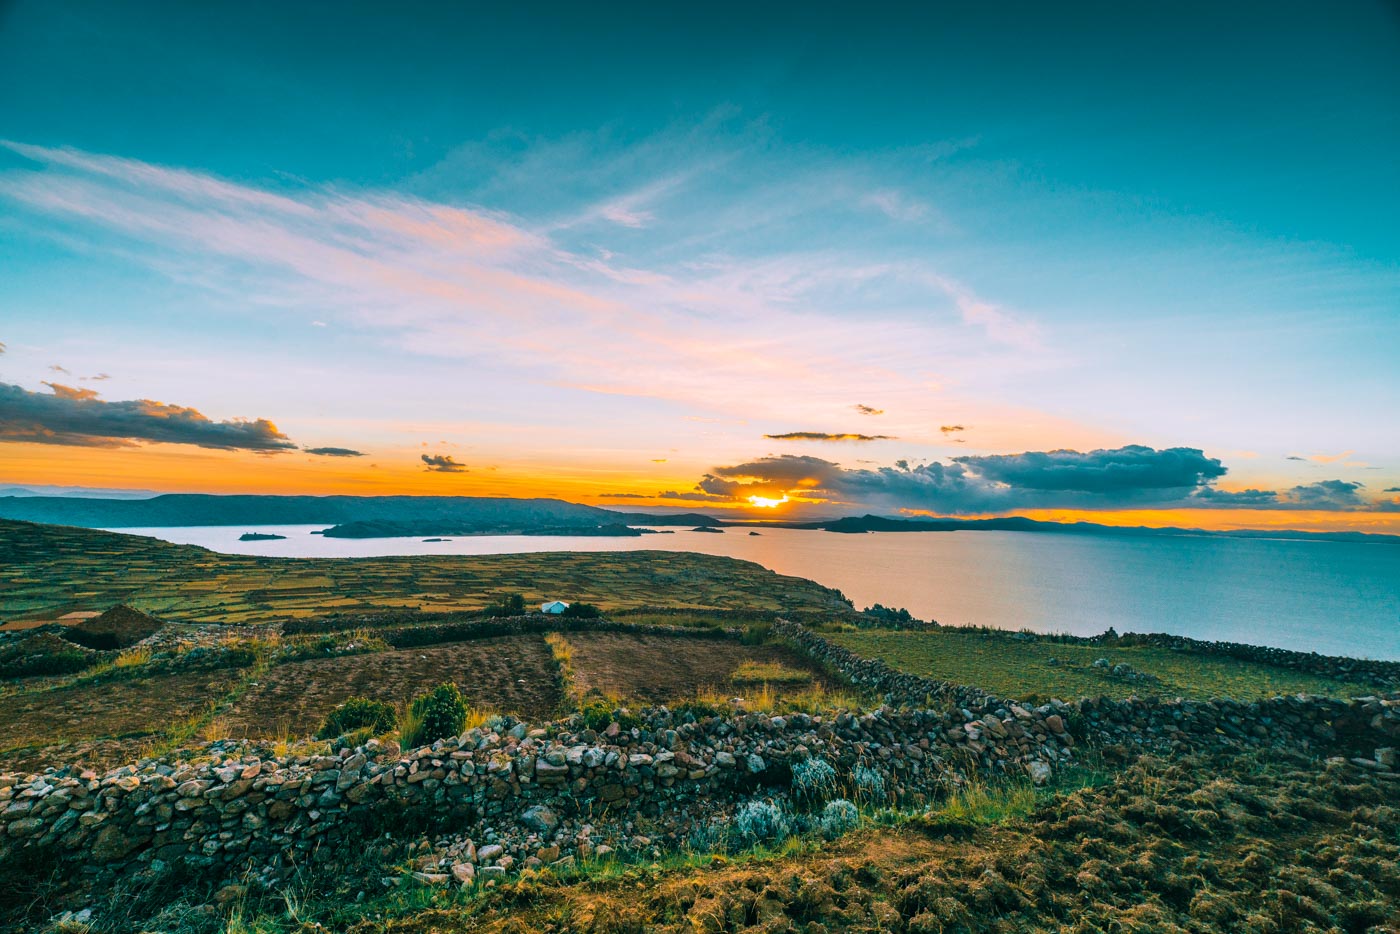 Sunset view from Pachatata on Amantani Island, Lake Titicaca